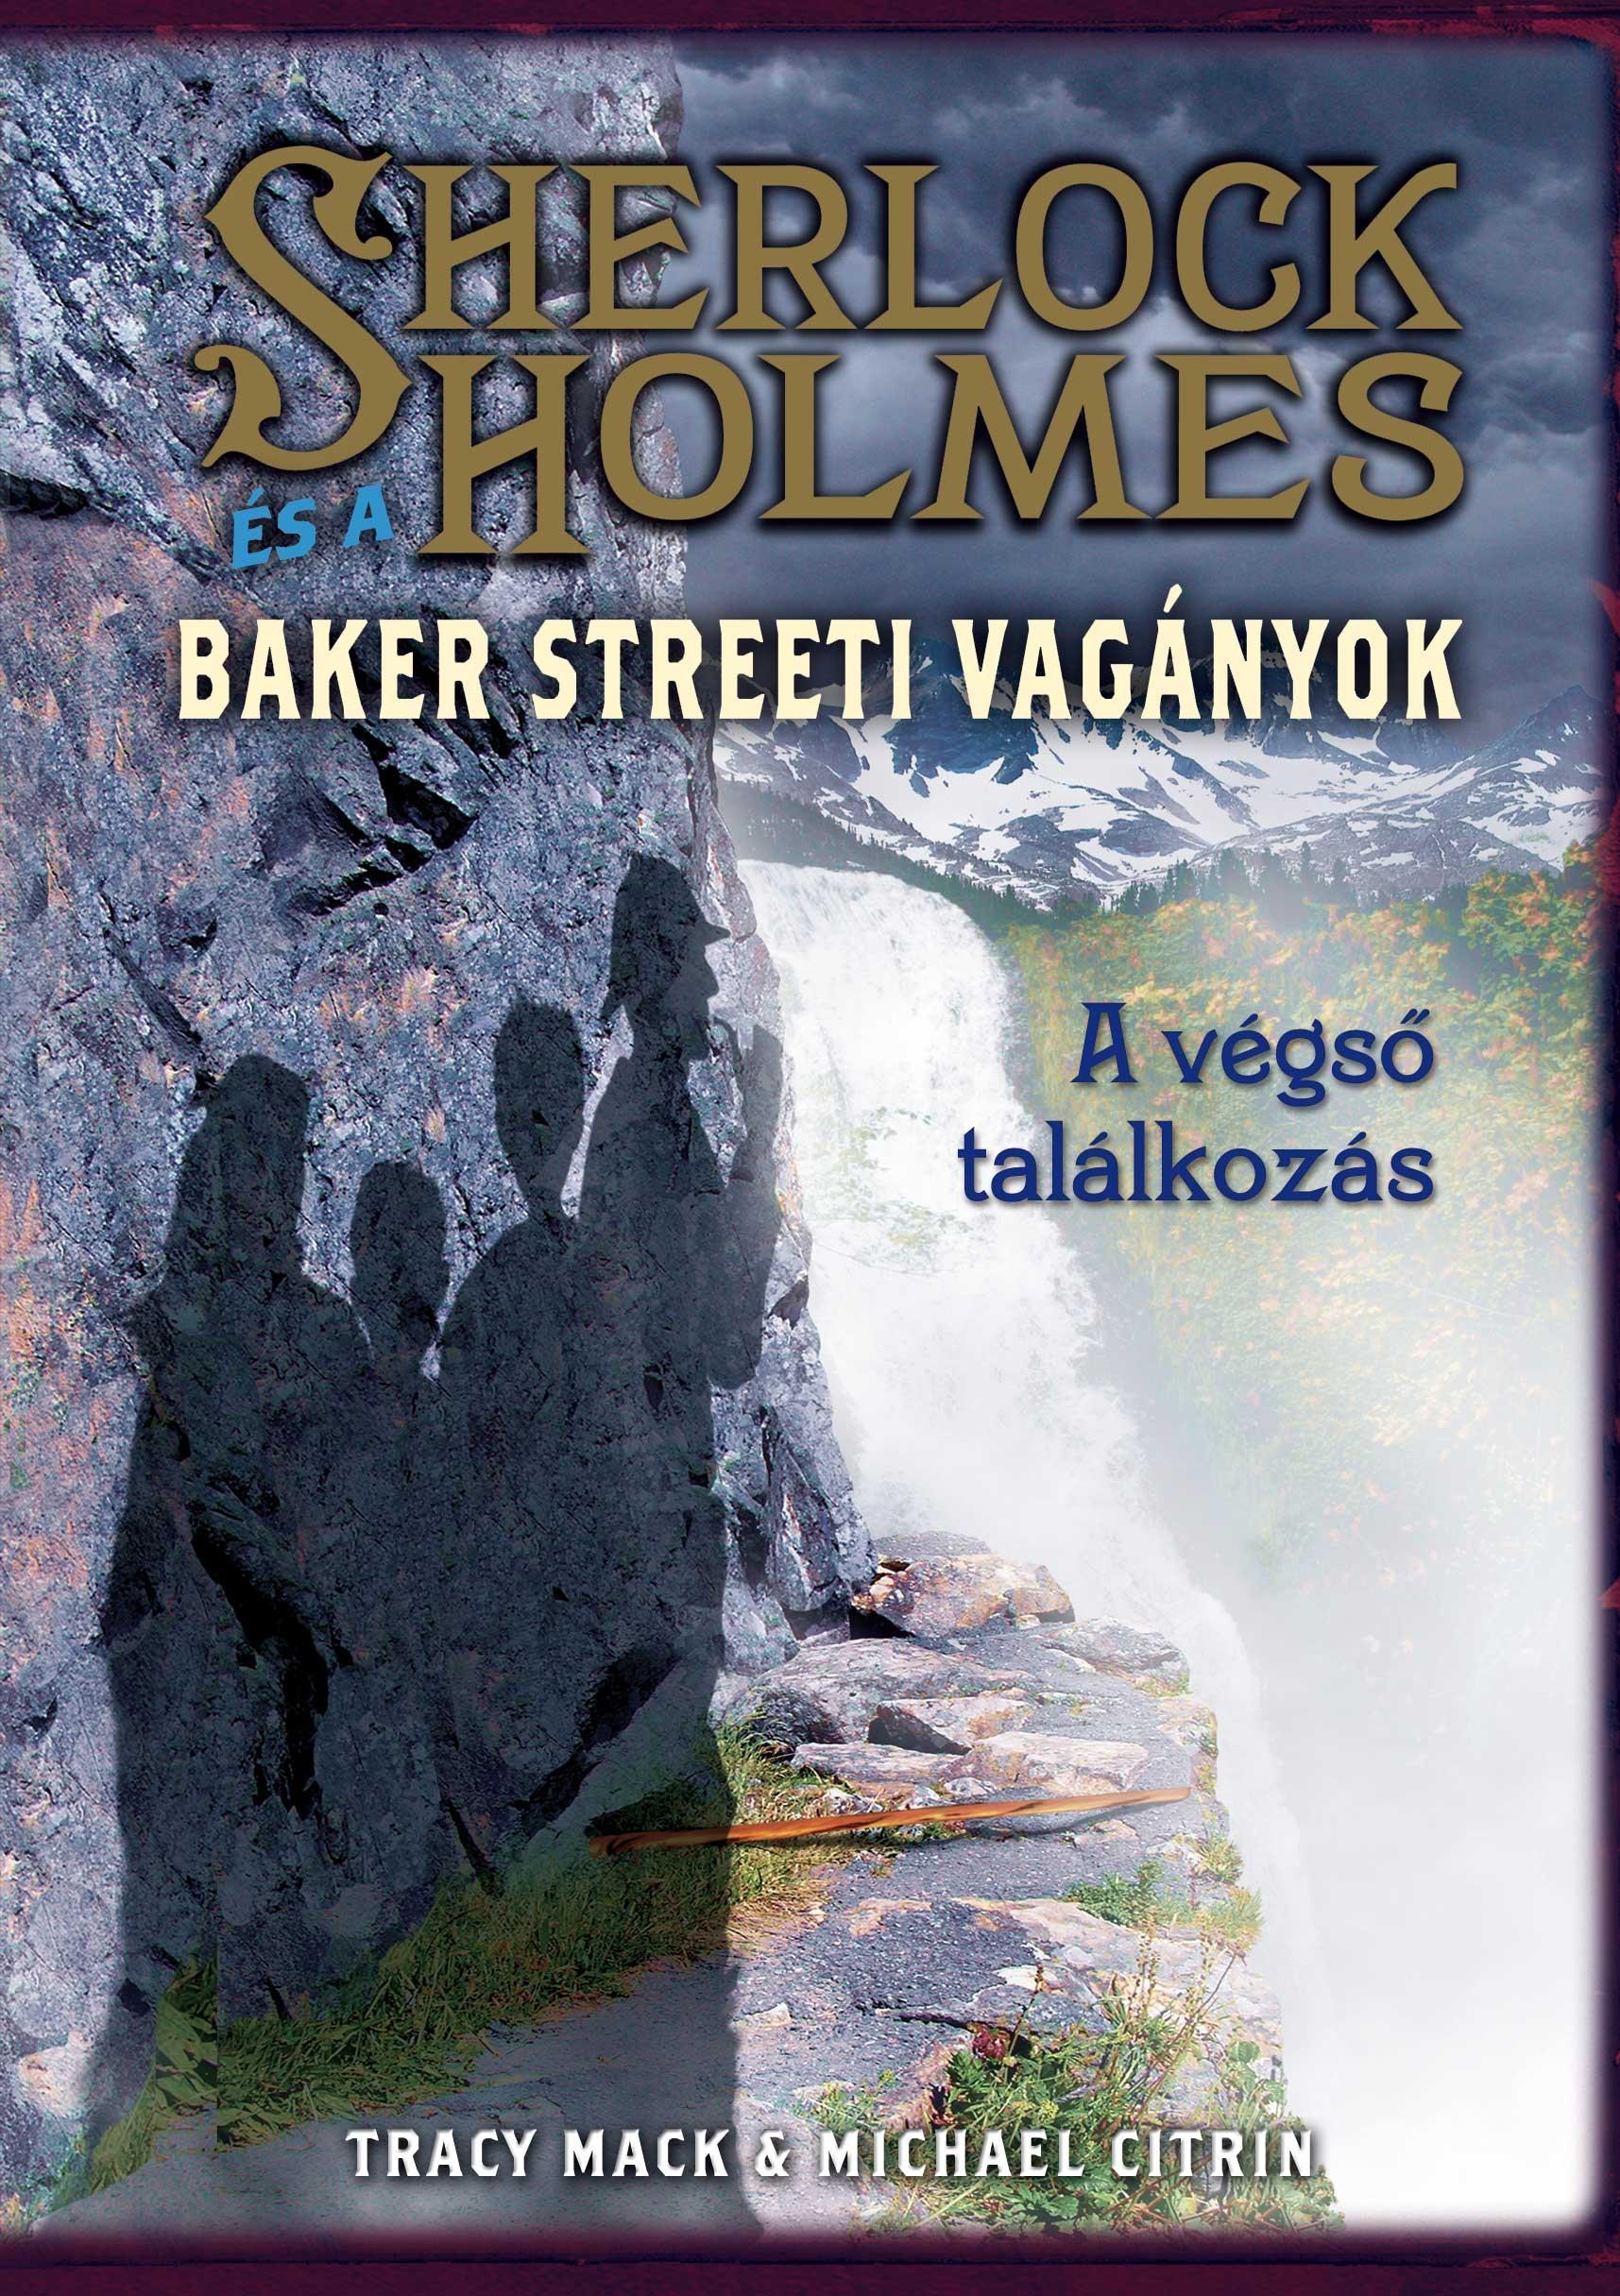 Tracy Mack / Michael Citrin - Sherlock Holmes és a Baker Streeti Vagányok - A végső találkozás - KEMÉNY BORÍTÓS